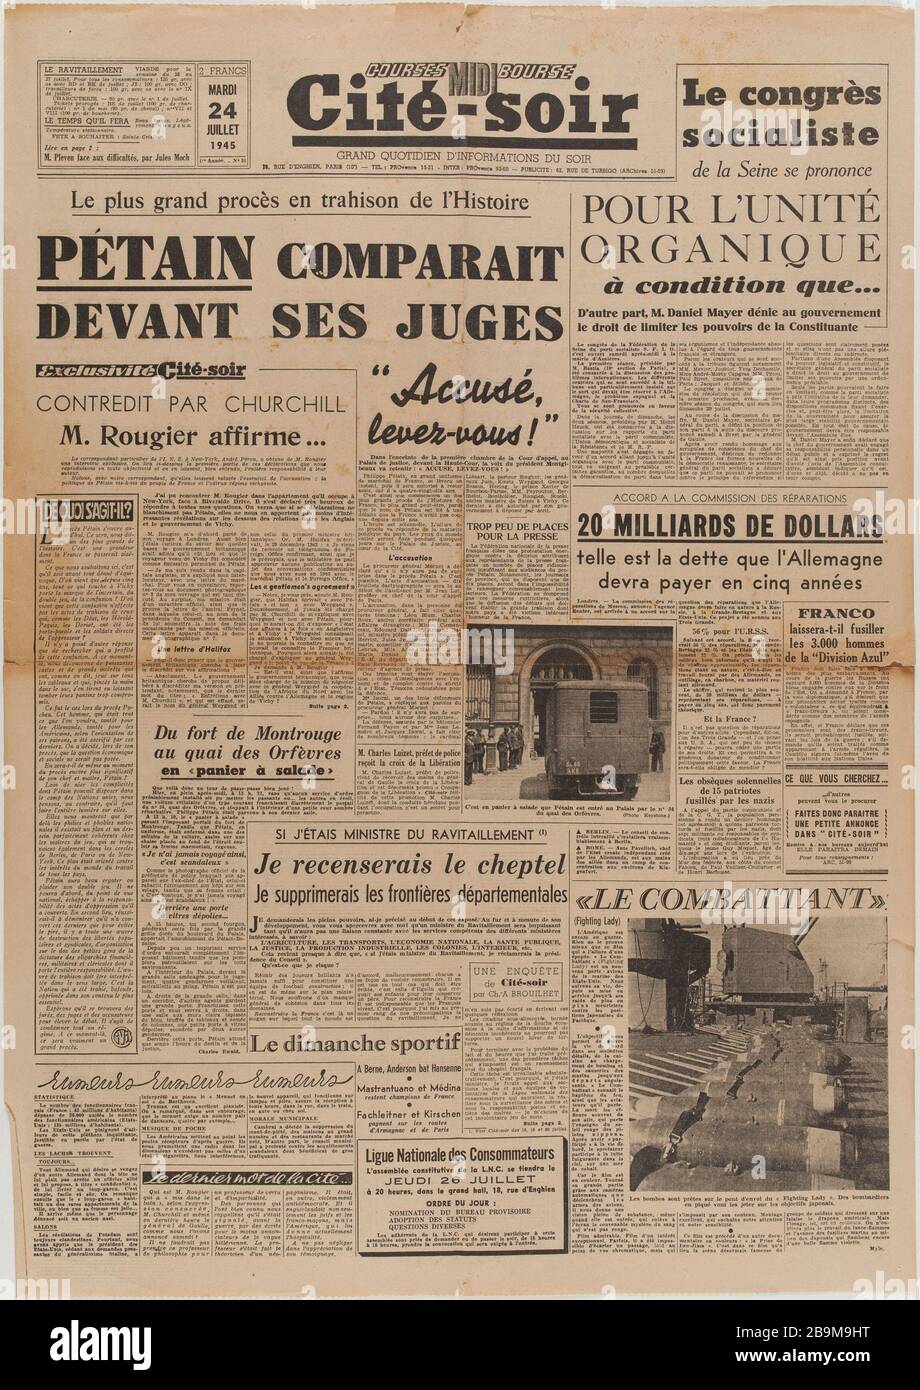 Journal 'City-Night' of July 24, 1945 Journal 'Cité-Soir' du 24 Juillet 1945. Papier imprimé, 1945. Musée du Général Leclerc de Hauteclocque et de la Libération de Paris, musée Jean Moulin. Stock Photo